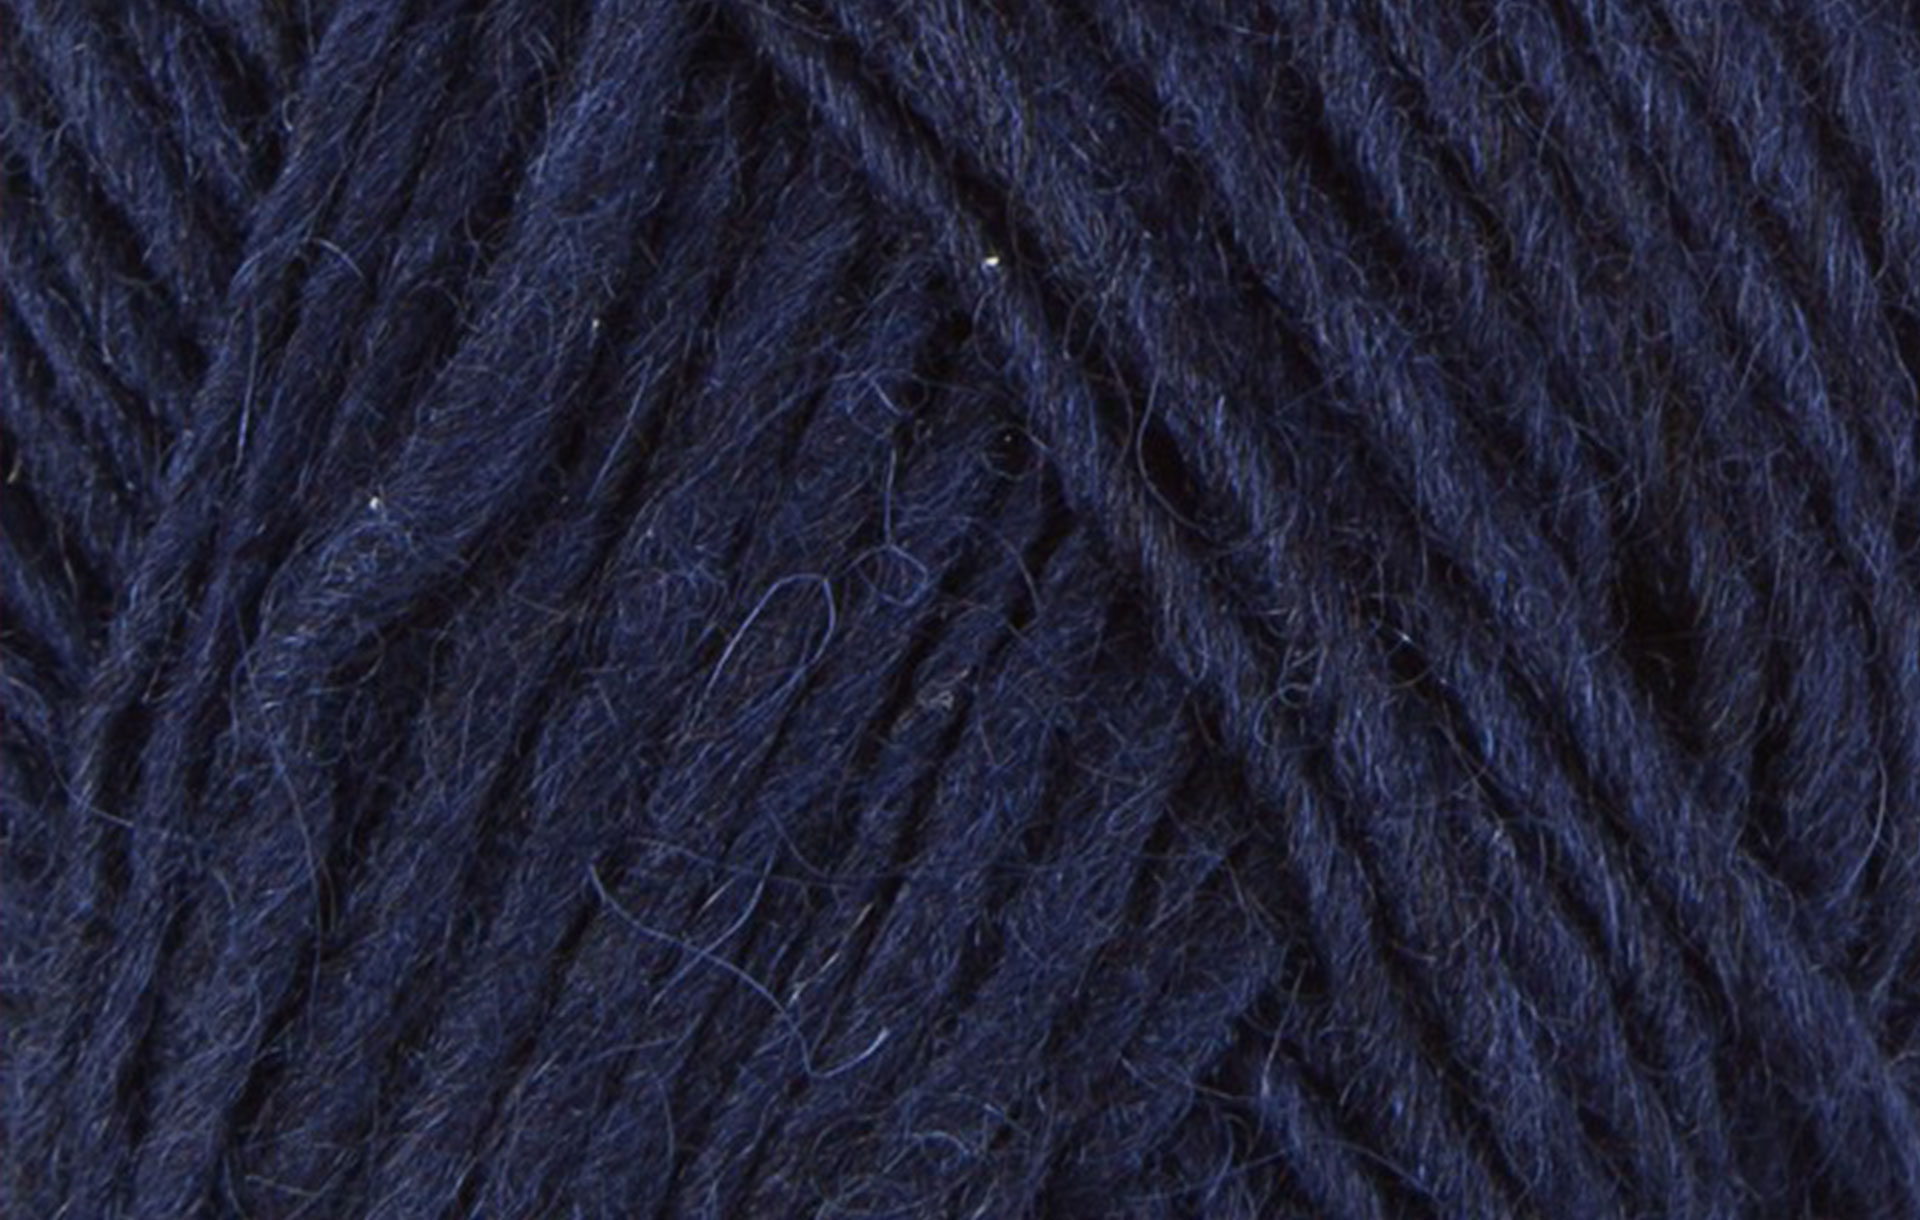 Пряжа для вязания Lett Lopi ∙ темно-синий